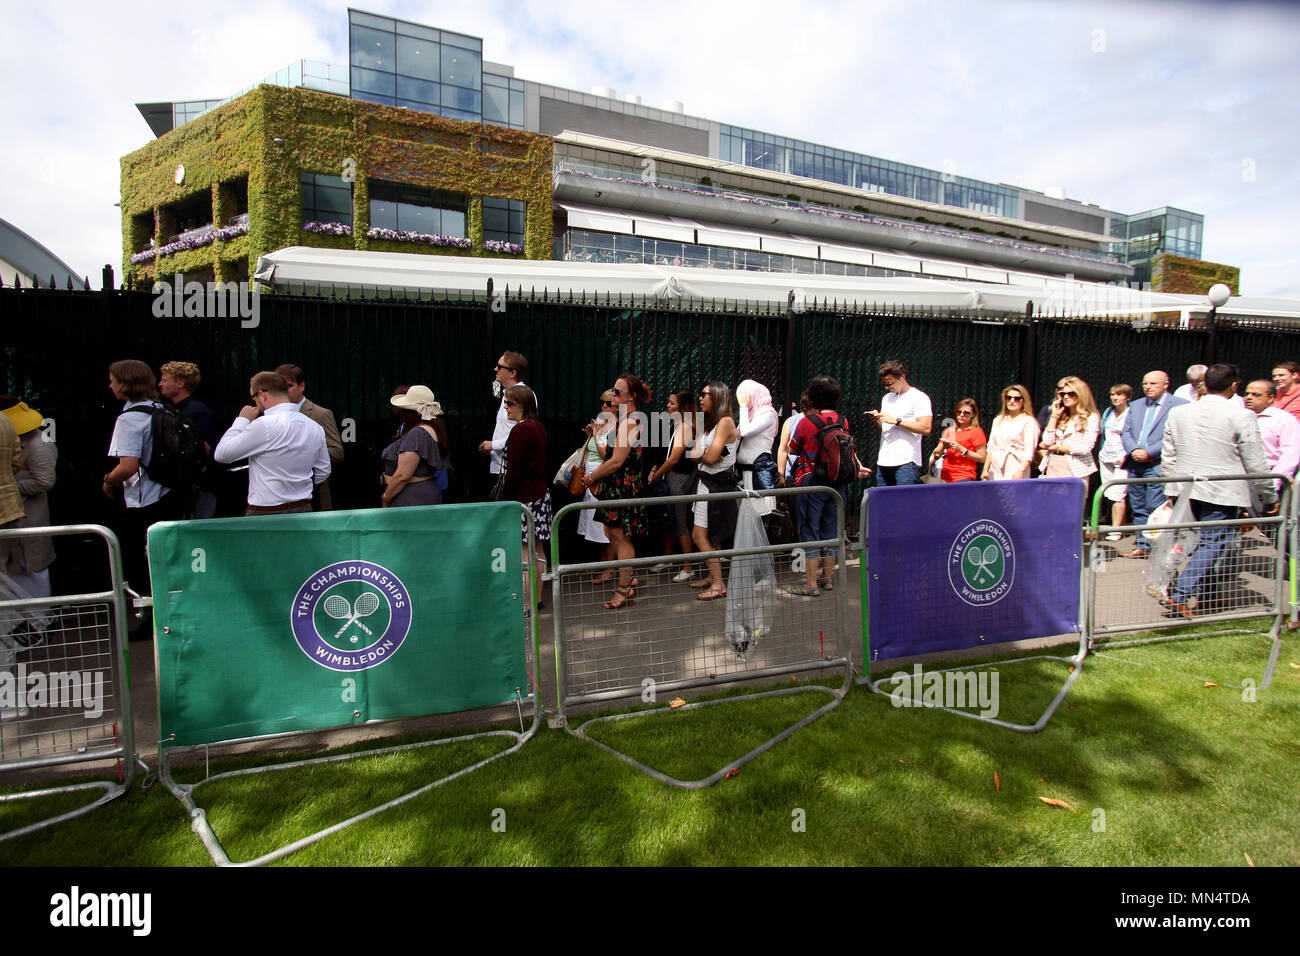 London, 3 Juli, 2017 - Wimbledon: Leute in der Warteschlange für Wimbledon tickets am ersten Tag des Spiels. Stockfoto